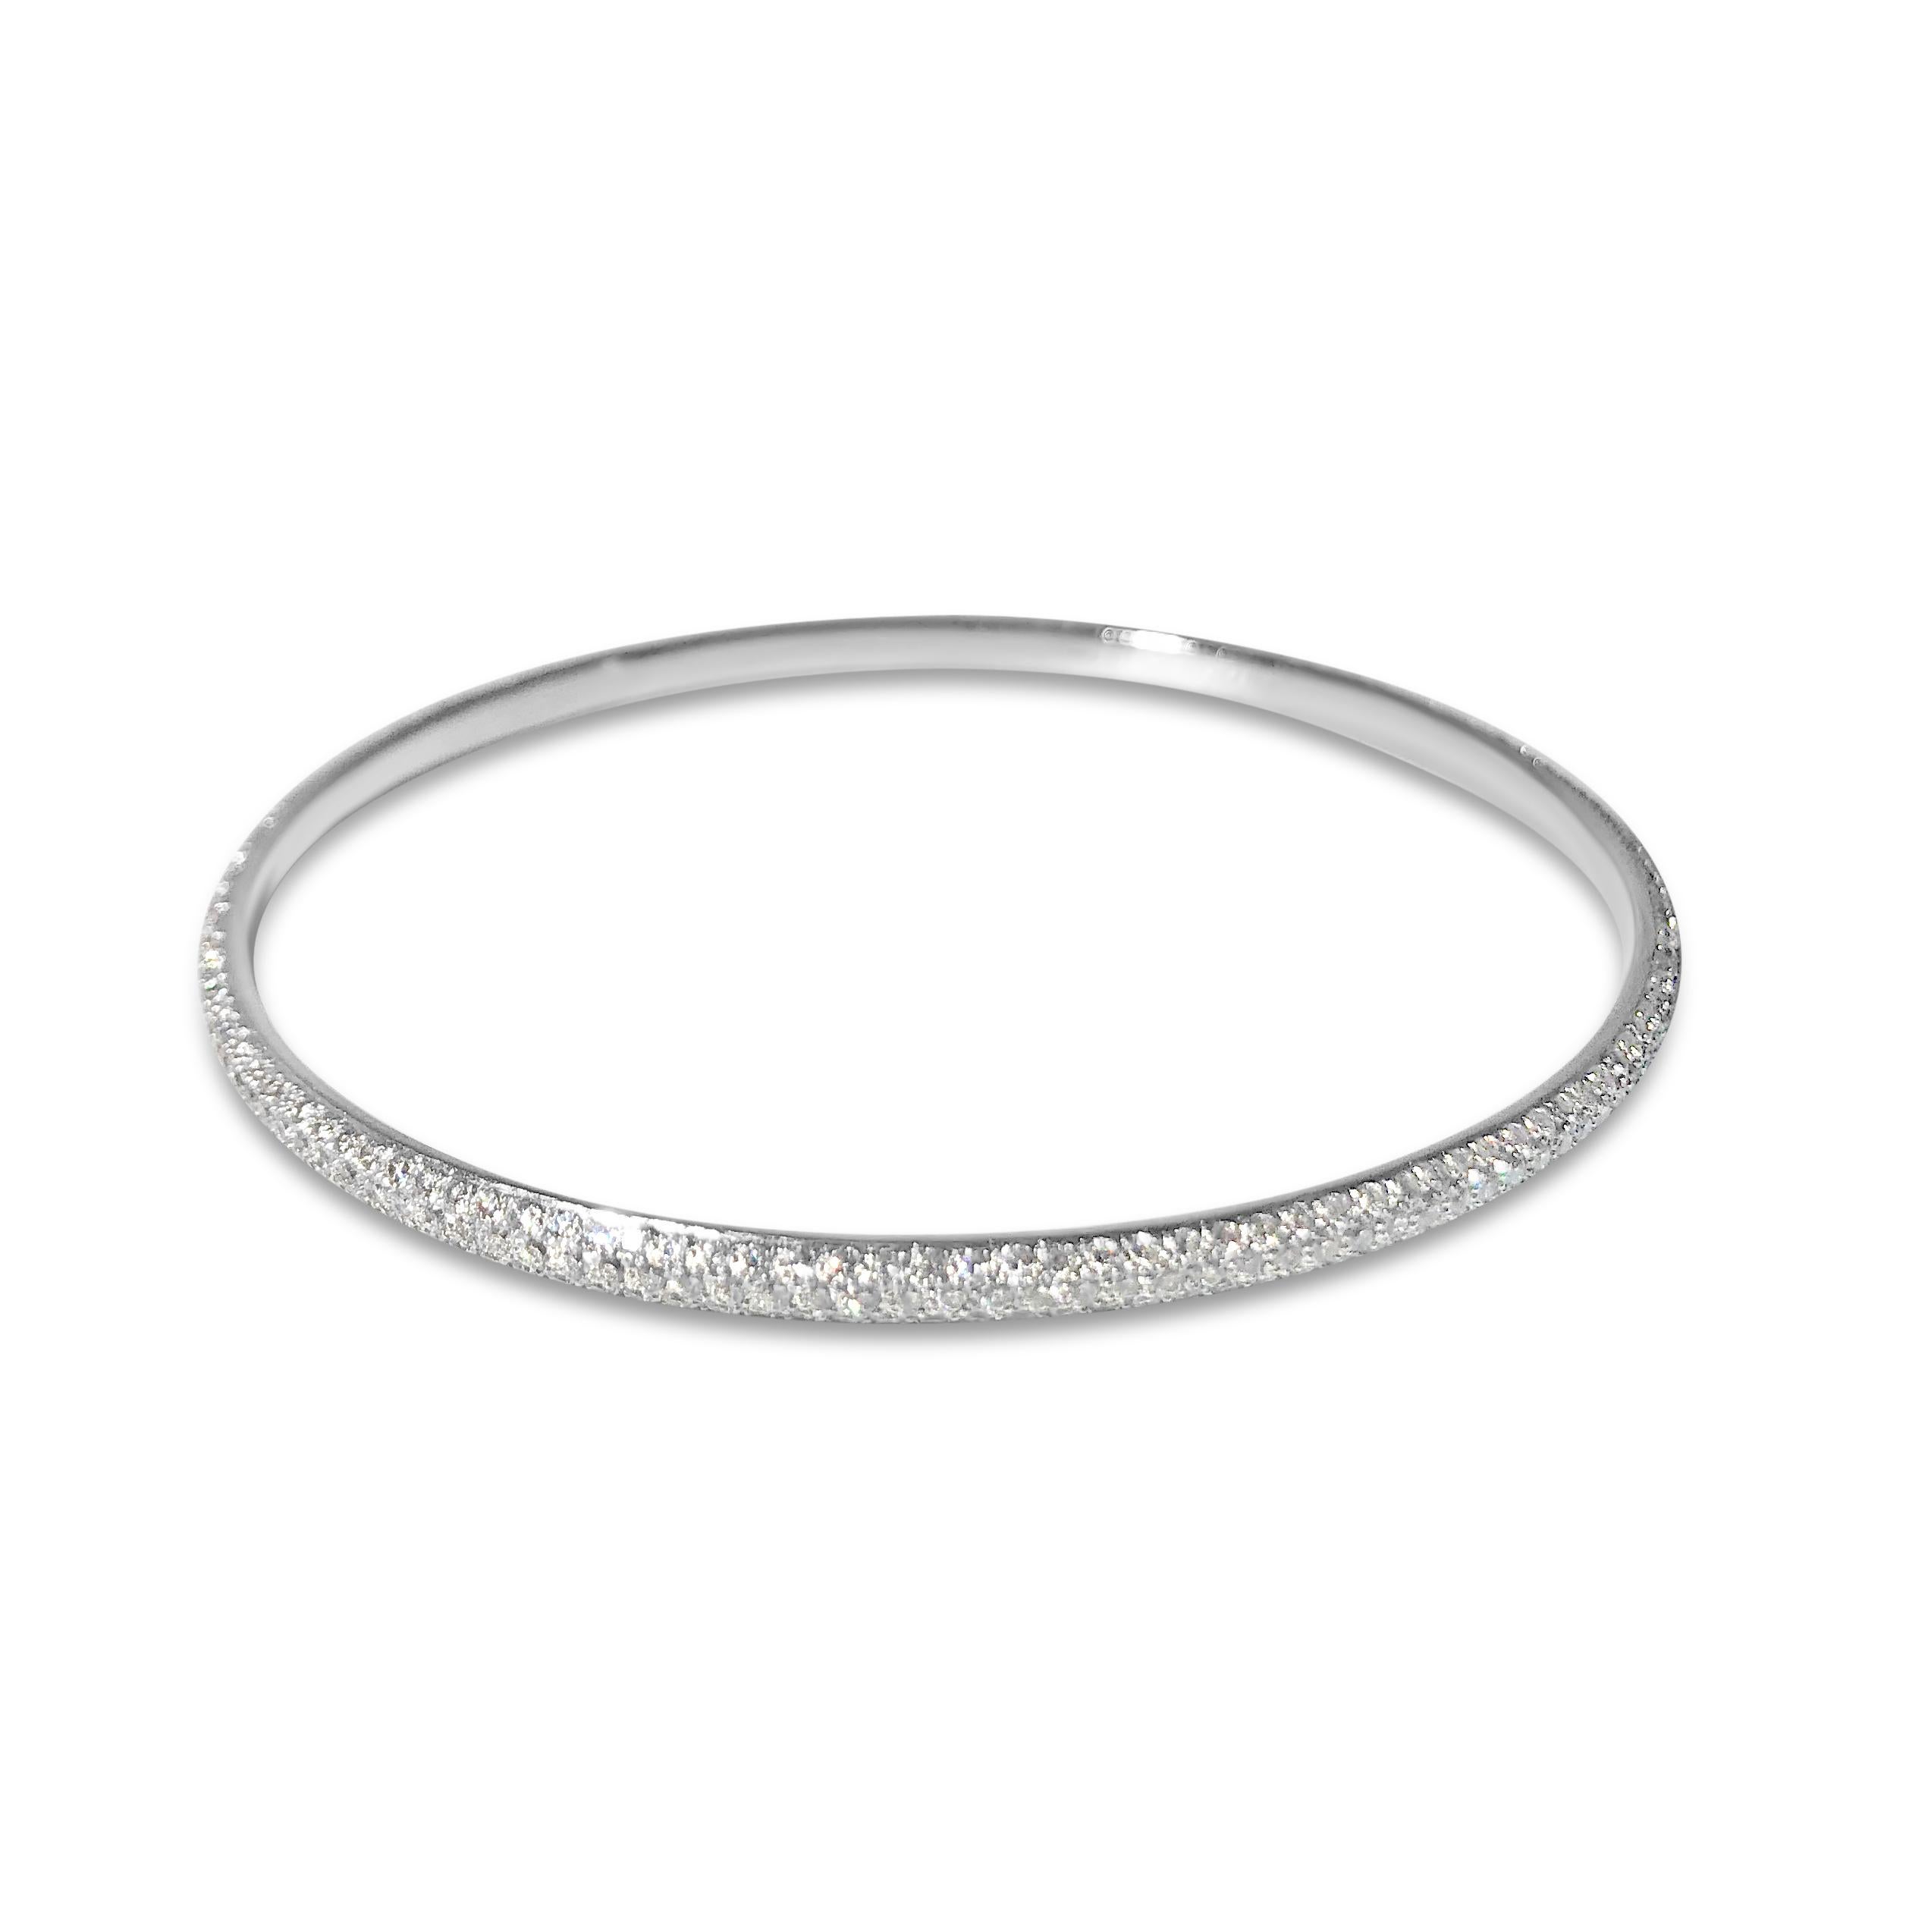 Notre bracelet rond en diamant pavé ultra-brillant brille en or blanc 18 carats, chargé de 405 diamants blancs ronds de 1,3 mm pour un total de 3,10 ct.  Conçu pour être glissé sur votre poignet et briller.

Spécifications :
- Pierre(s) : Diamant